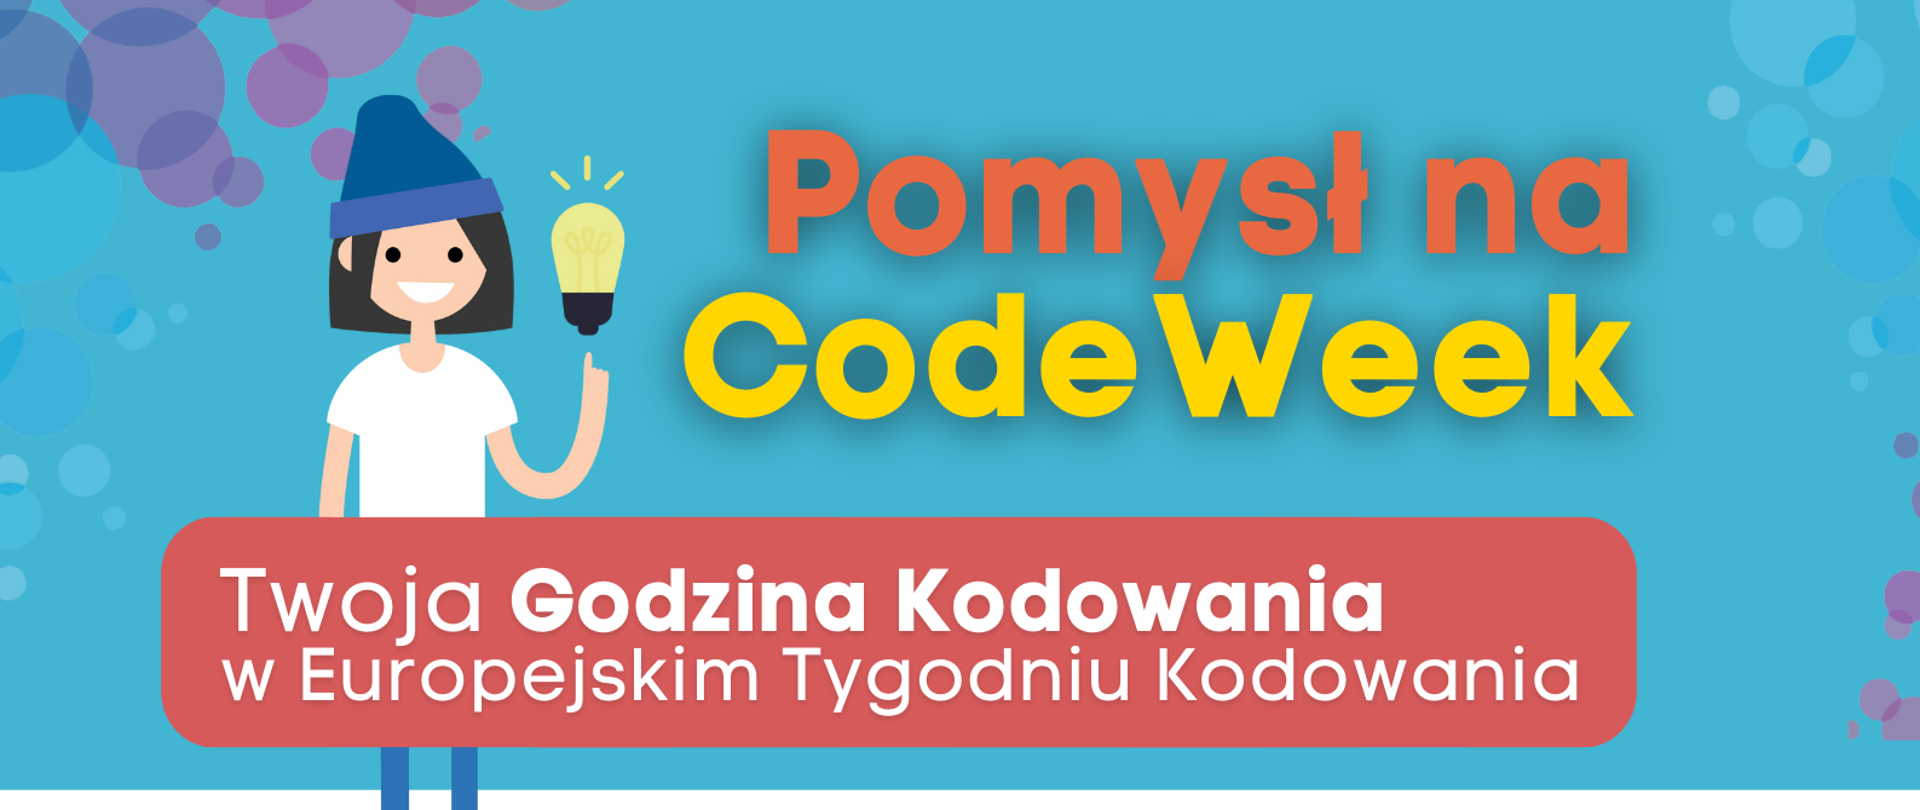 Grafika przedstawia plakat zachęcający do udziału w CodeWeek. W górnej części napis "Pomysł na CodeWeek" oraz uśmiechnięta dziewczynka z żarówką. Pod spodem napis " Twoja Godzina Kodowania w Europejskim Tygodniu Kodowania”. Poniżej w formie etykiet przedstawione są kolejne kroki zgłoszenia inicjatywy:
„1. Wejdź na stronę Godziny Kodowania hourofcode.com/pl”,
„2. Skorzystaj z instrukcji i zaplanuj Twoją pierwszą Godzinę Kodowania”
„3. Zgłoś swoje wydarzenie na codeweek.eu/add i zostań częścią codeweekowej społeczności "
"4. Pobierz certyfikat".
W dolnej części tekstu kod QR prowadzący do strony www.koduj.gov.pl, adresy Facebook CodeWeekPL, Instagram codeweekpl i adres e-mailowy programowanie@mc.gov.pl oraz logotypy Funduszy Europejskich, KPRM, NASK i Unii Europejskiej. Powyżej krótka informacja o CodeWeek "CodeWeek to społeczna inicjatywa, w ramach której europejskie państwa „ścigają się” w liczbie zorganizowanych wydarzeń związanych z programowaniem. W 2021 roku Europejski Tydzień Kodowania obchodzimy w dniach 9-24 października, ale wydarzenia związane z promocją programowania możesz zgłaszać cały rok.".
